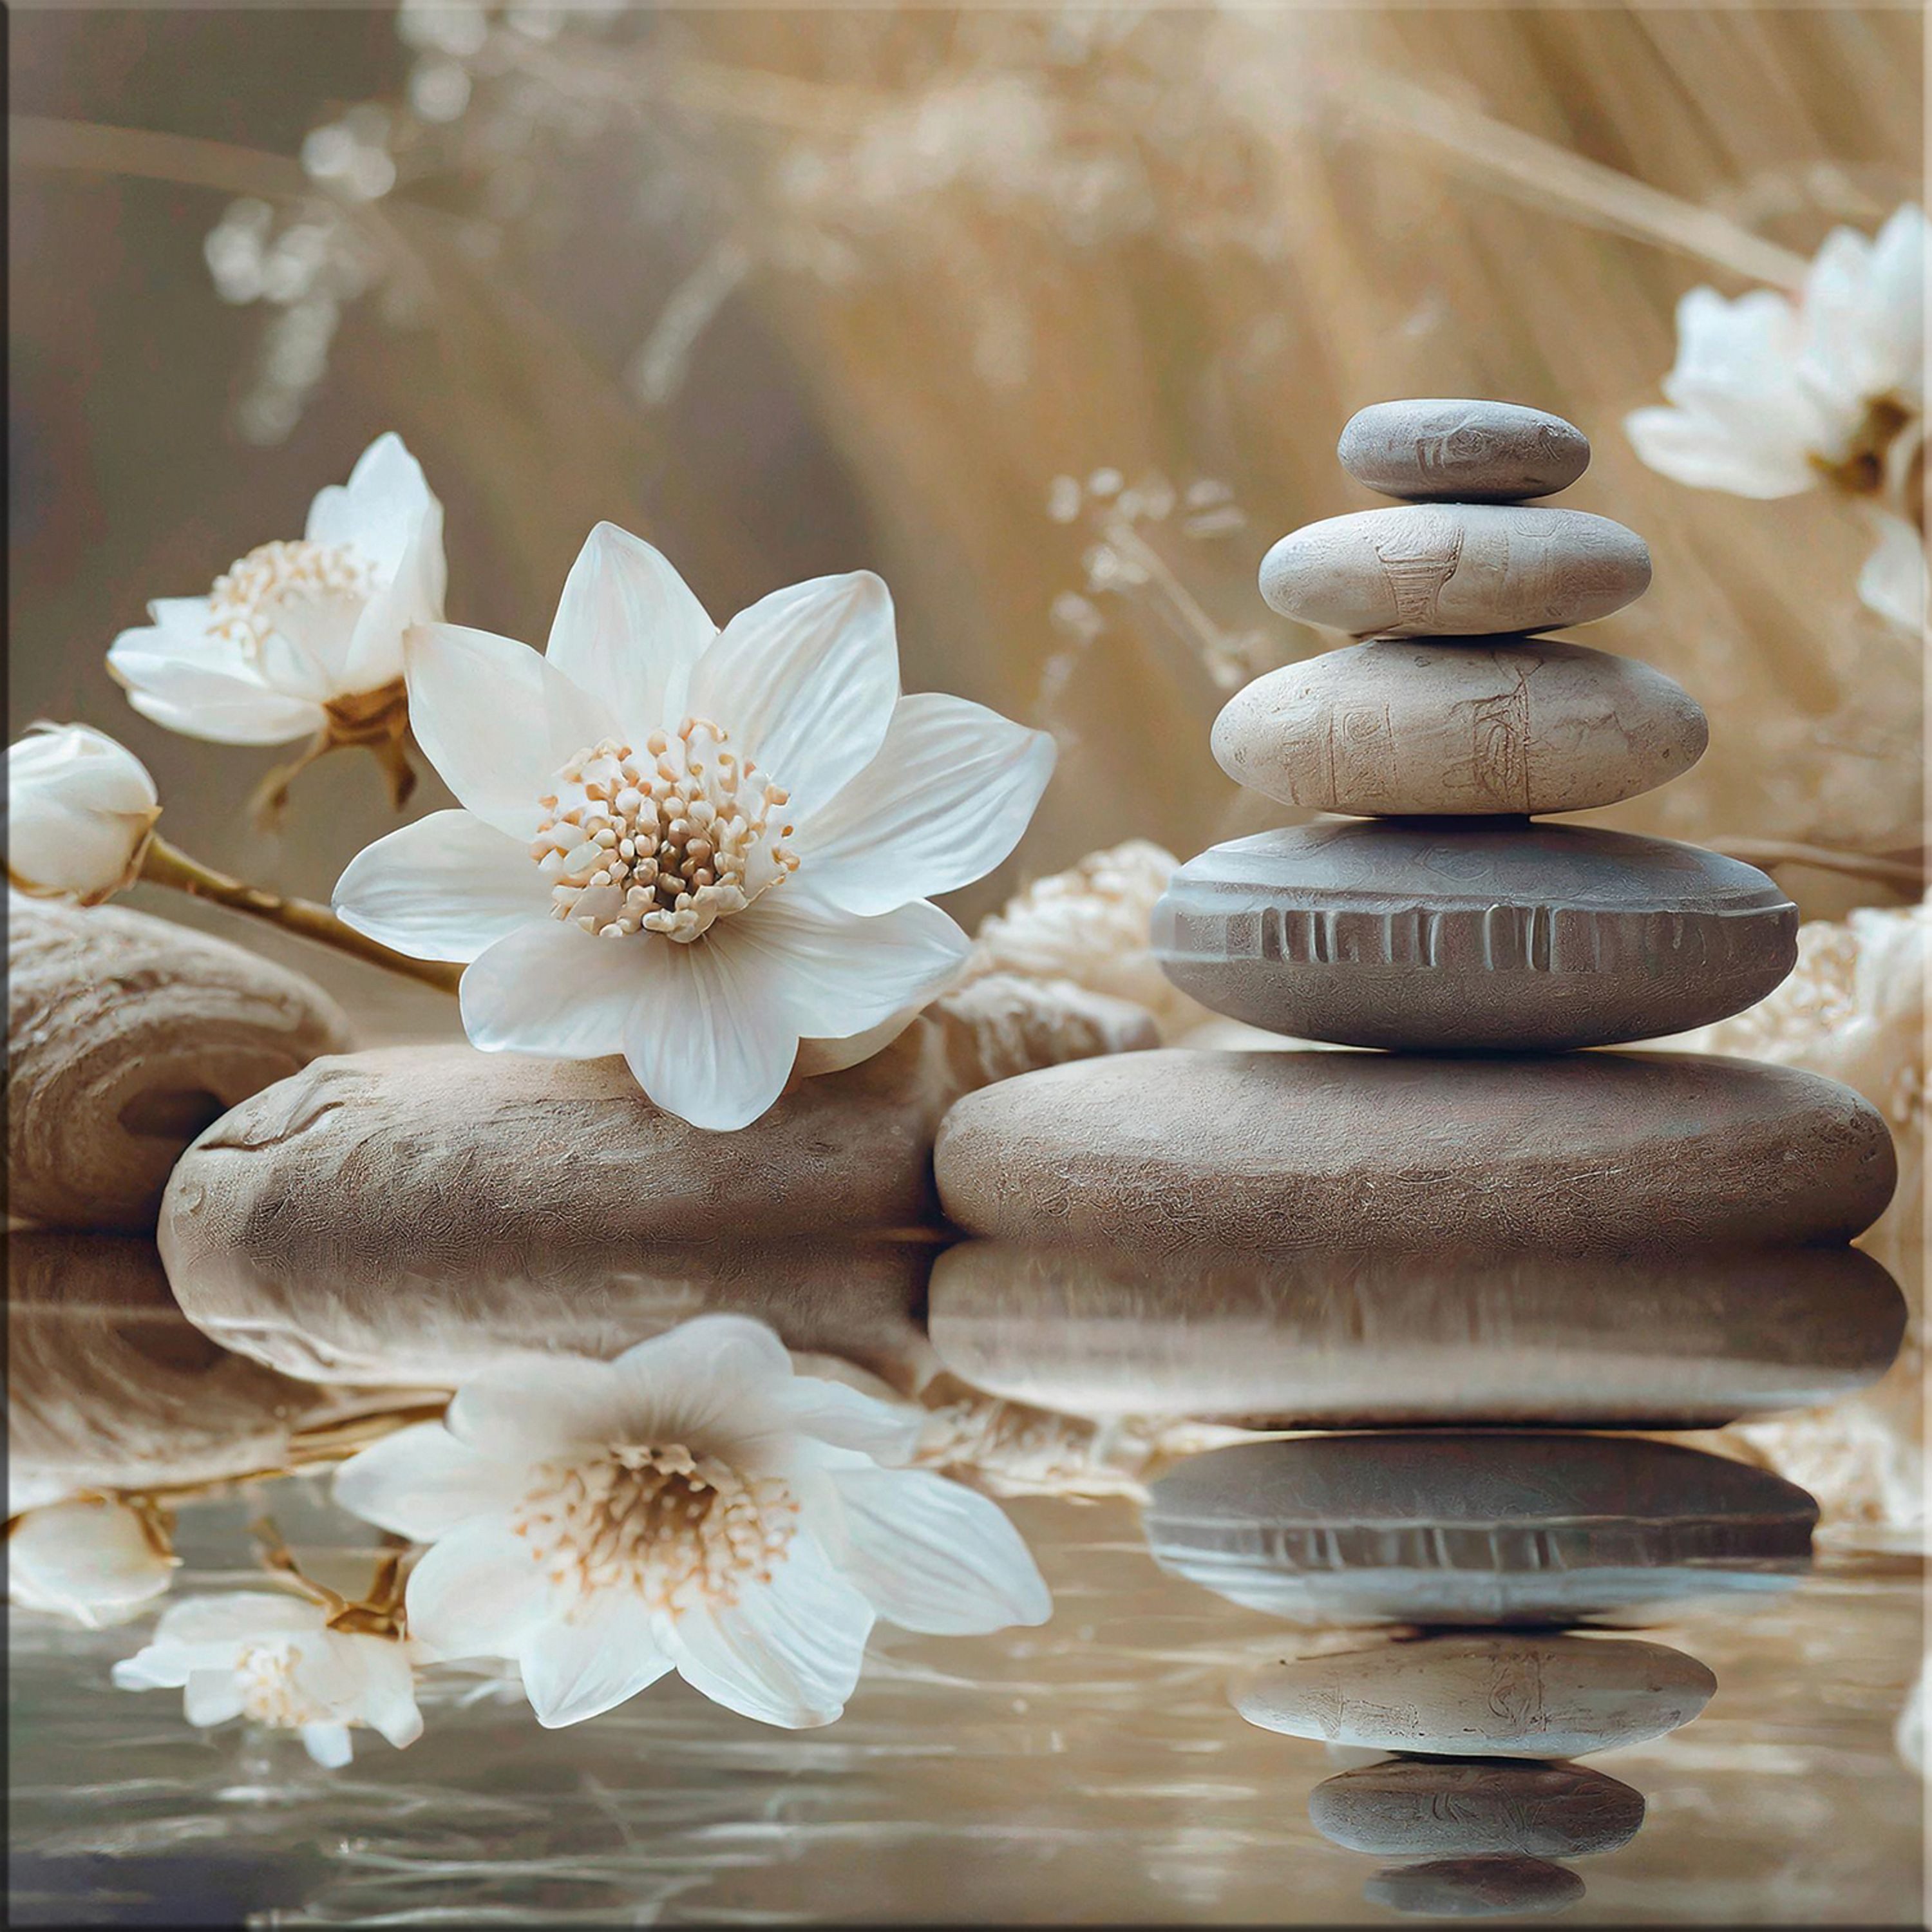 artissimo Glasbild Glasbild 30x30cm Bild aus Glas Boho-Style weiß beige Yoga Wellness, Zen und Spa: Steine